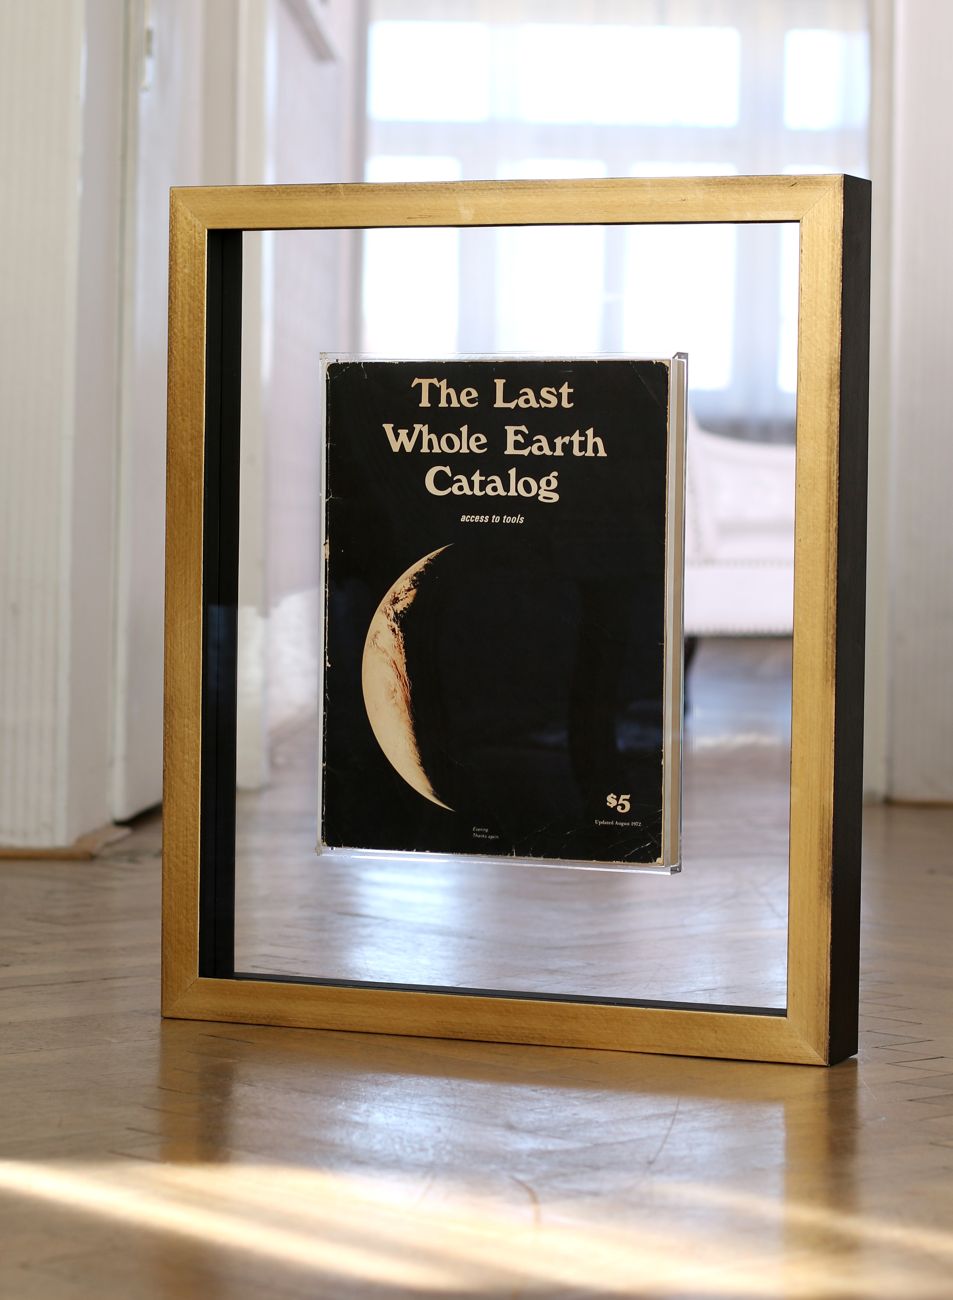 Kniha The Last Whole Earth Catalog oboustranně zarámovaná do průhledného boxu | © Frame-it.cz